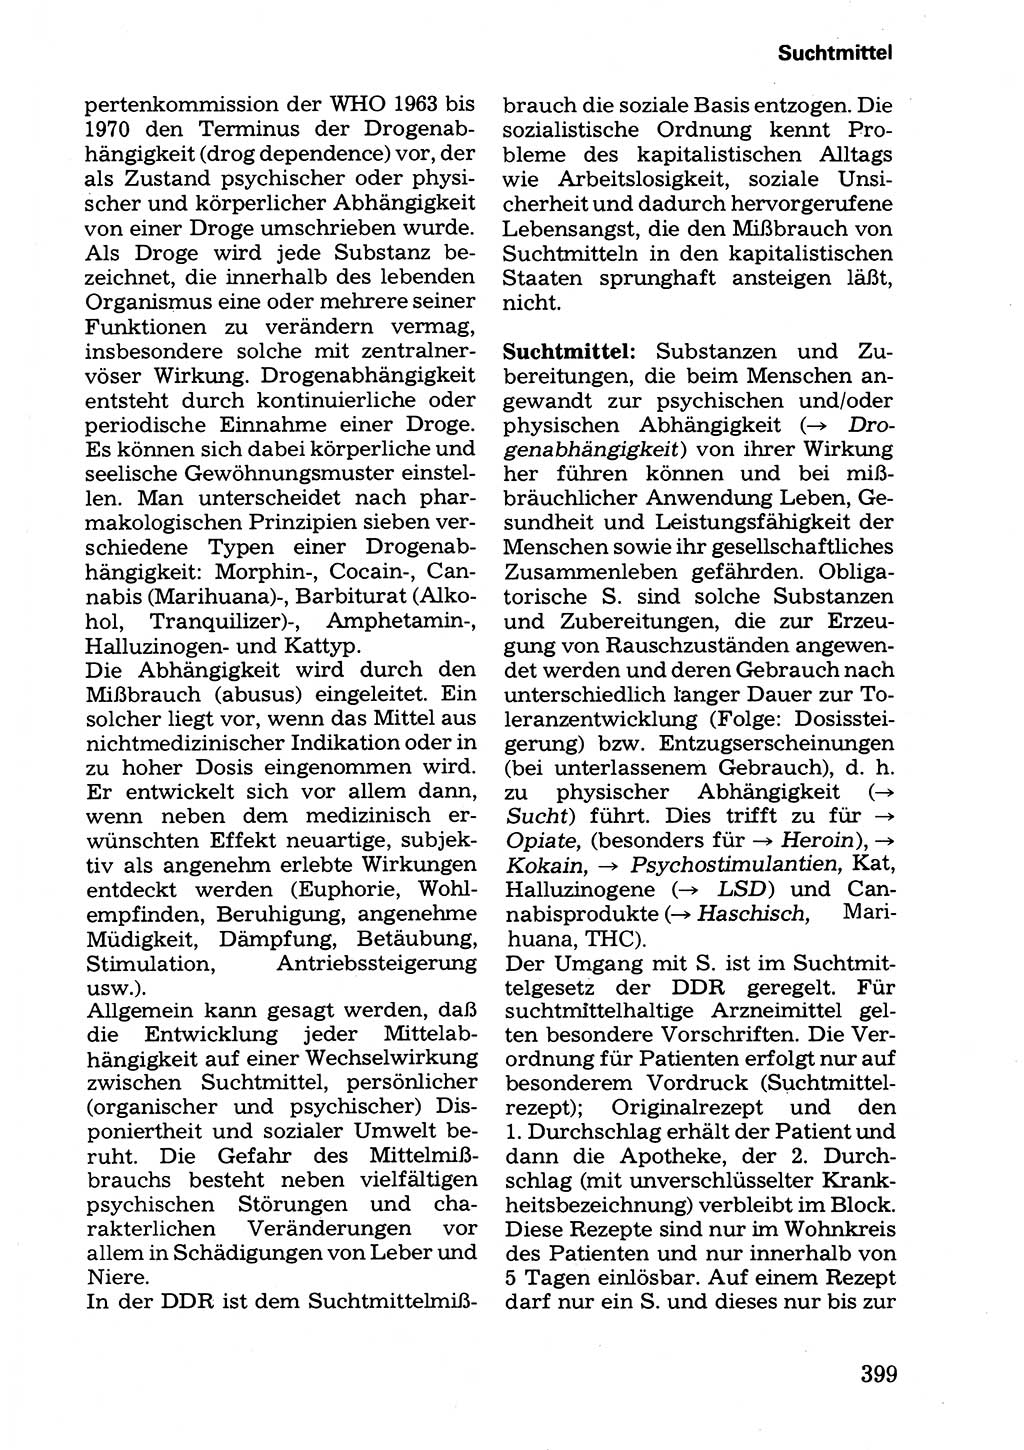 Wörterbuch der sozialistischen Kriminalistik [Deutsche Demokratische Republik (DDR)] 1981, Seite 399 (Wb. soz. Krim. DDR 1981, S. 399)